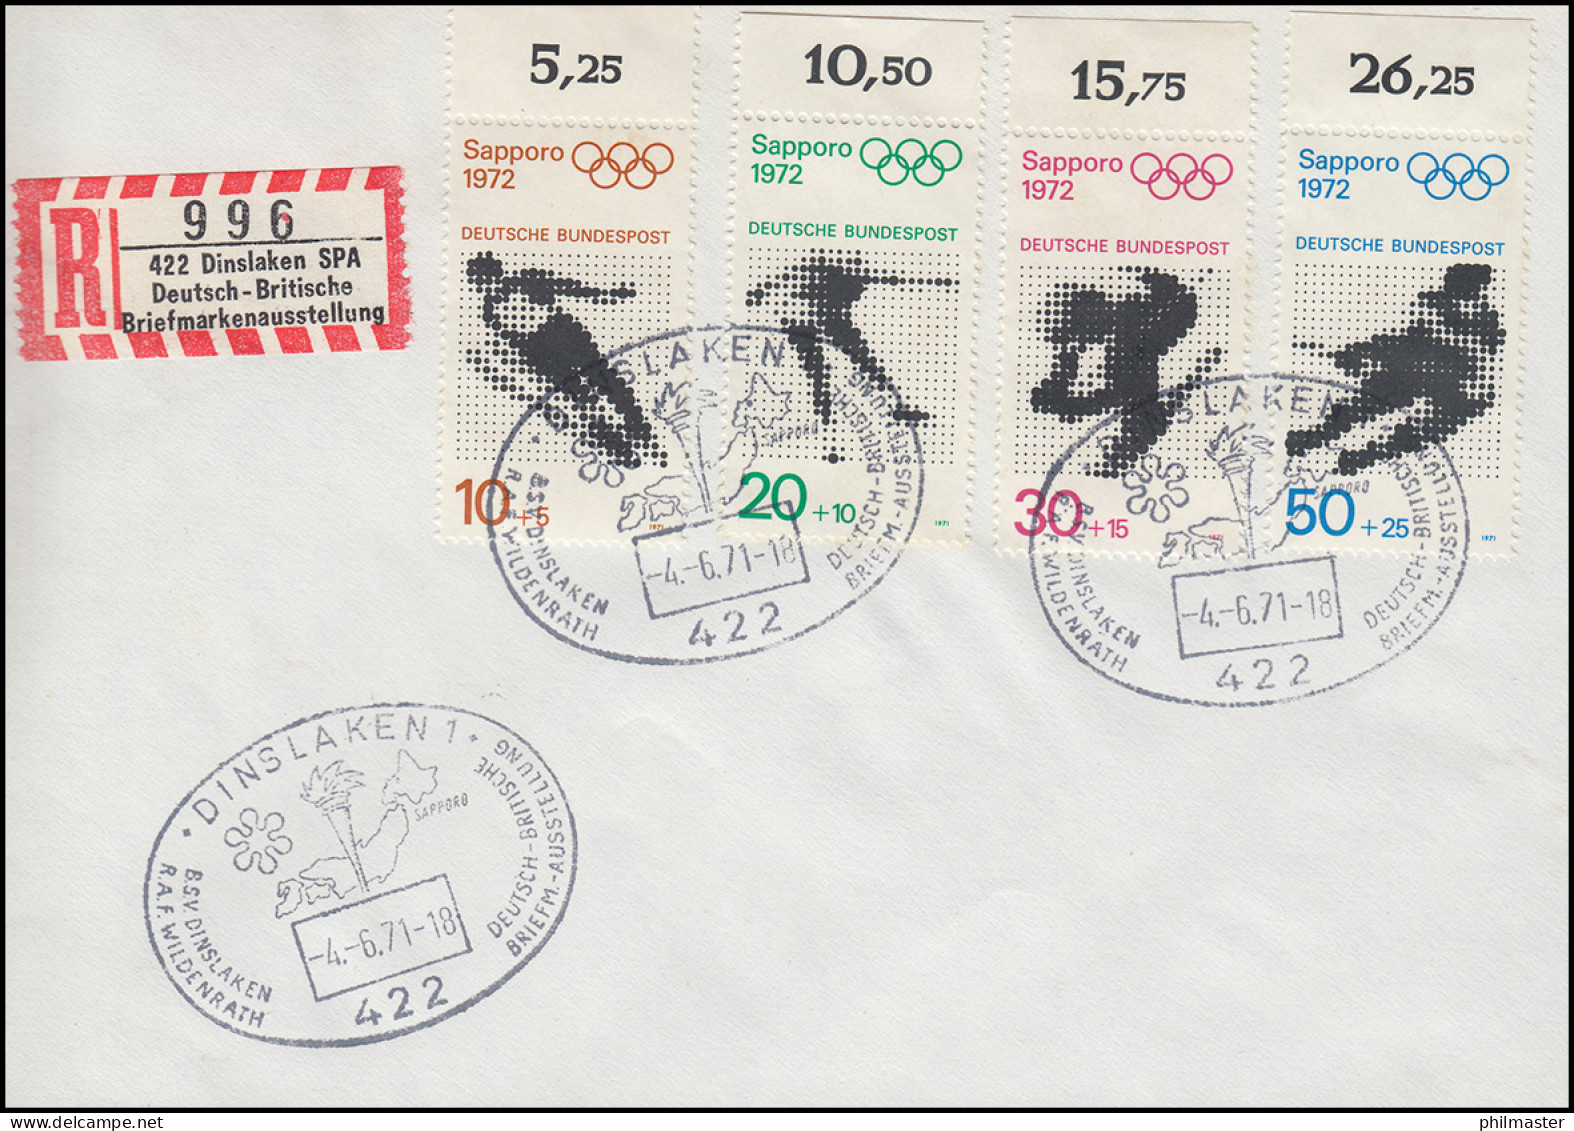 680-683 Olympia, Sonder-R-Zettel Briefmarkenausstelung SSt DISNLAKEN 4.6.71 - R- & V- Vignette